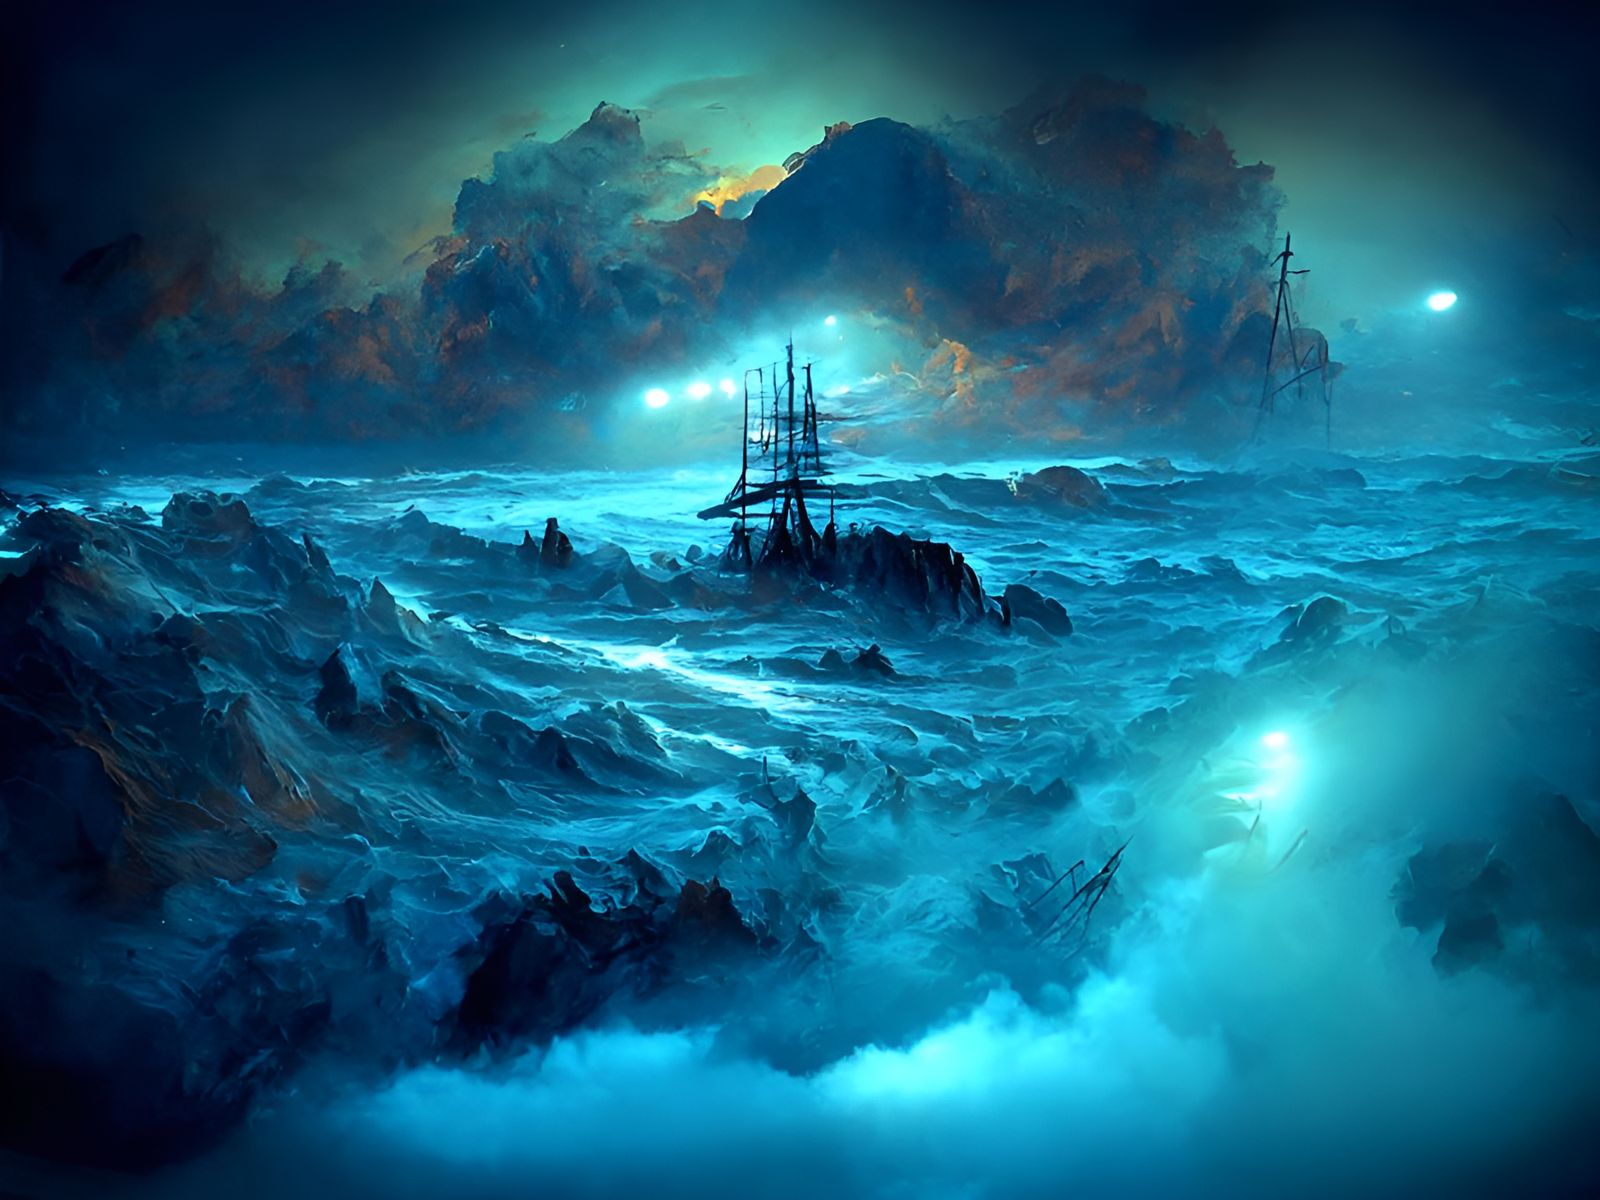 Ghost ships on stygian seas